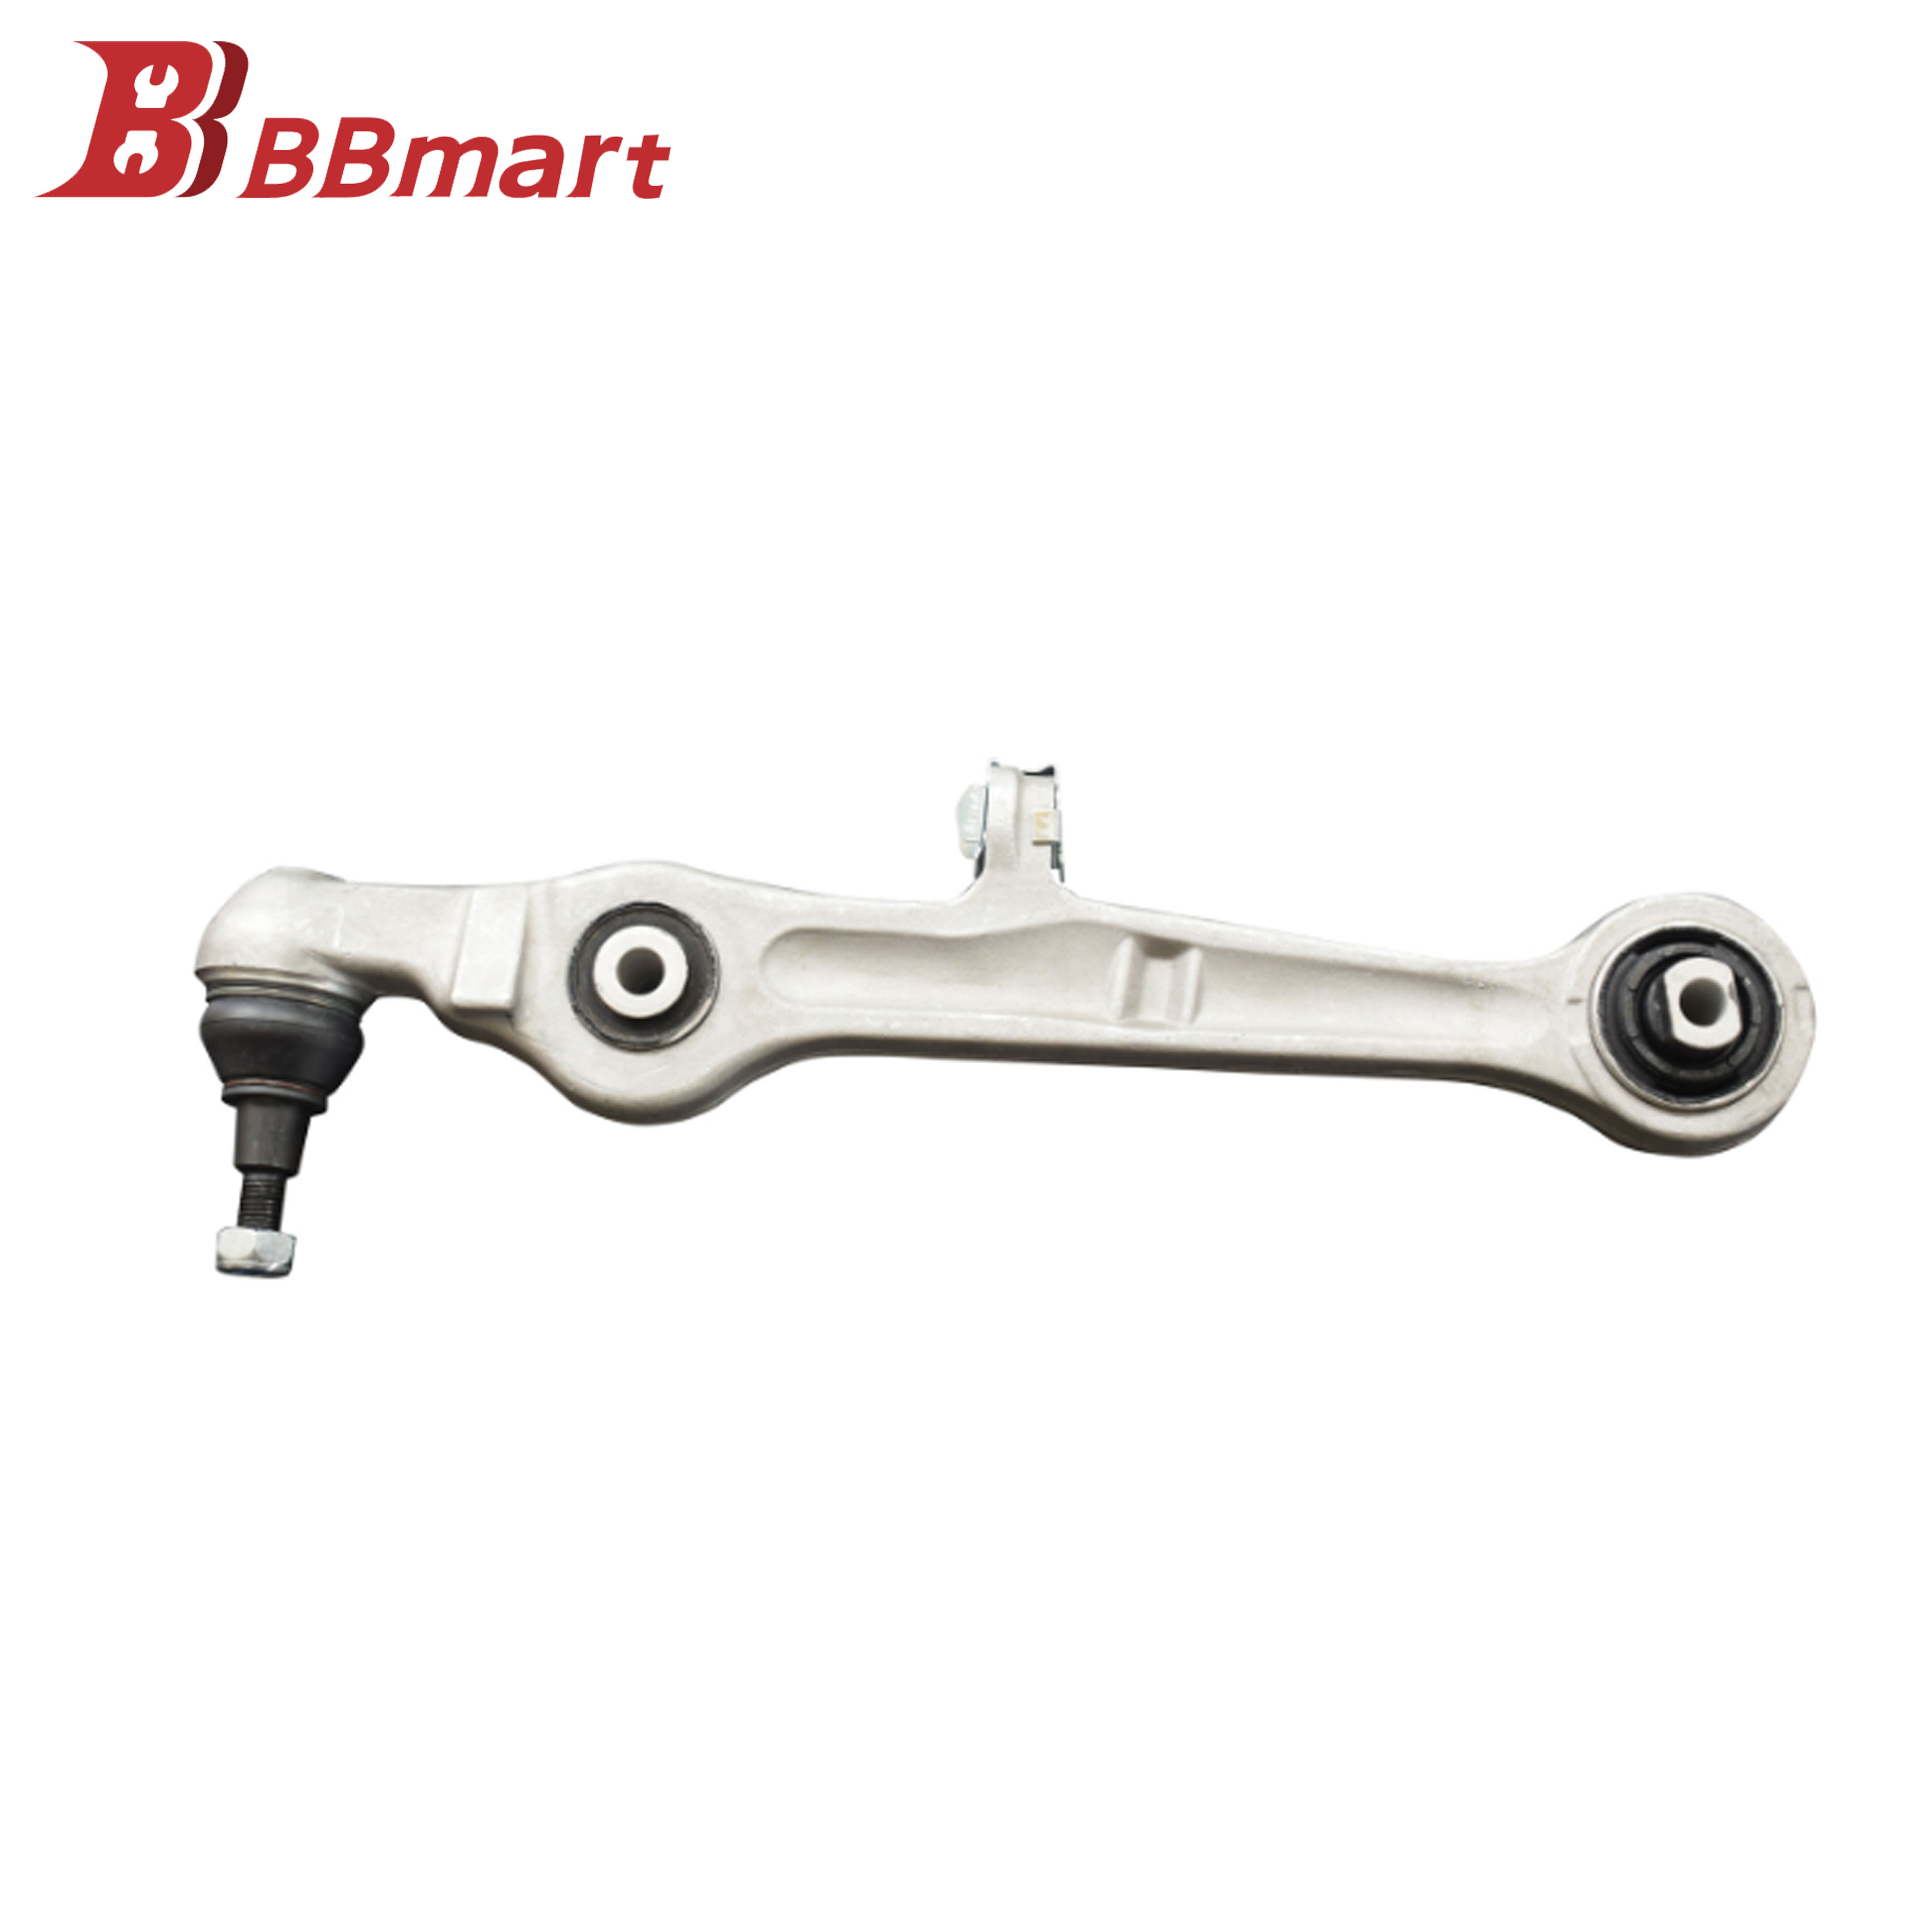 BBmart Auto Parts Suspension Control Arm For Audi A4 A6 C6 A8 VW Passat OE 4D0407151P